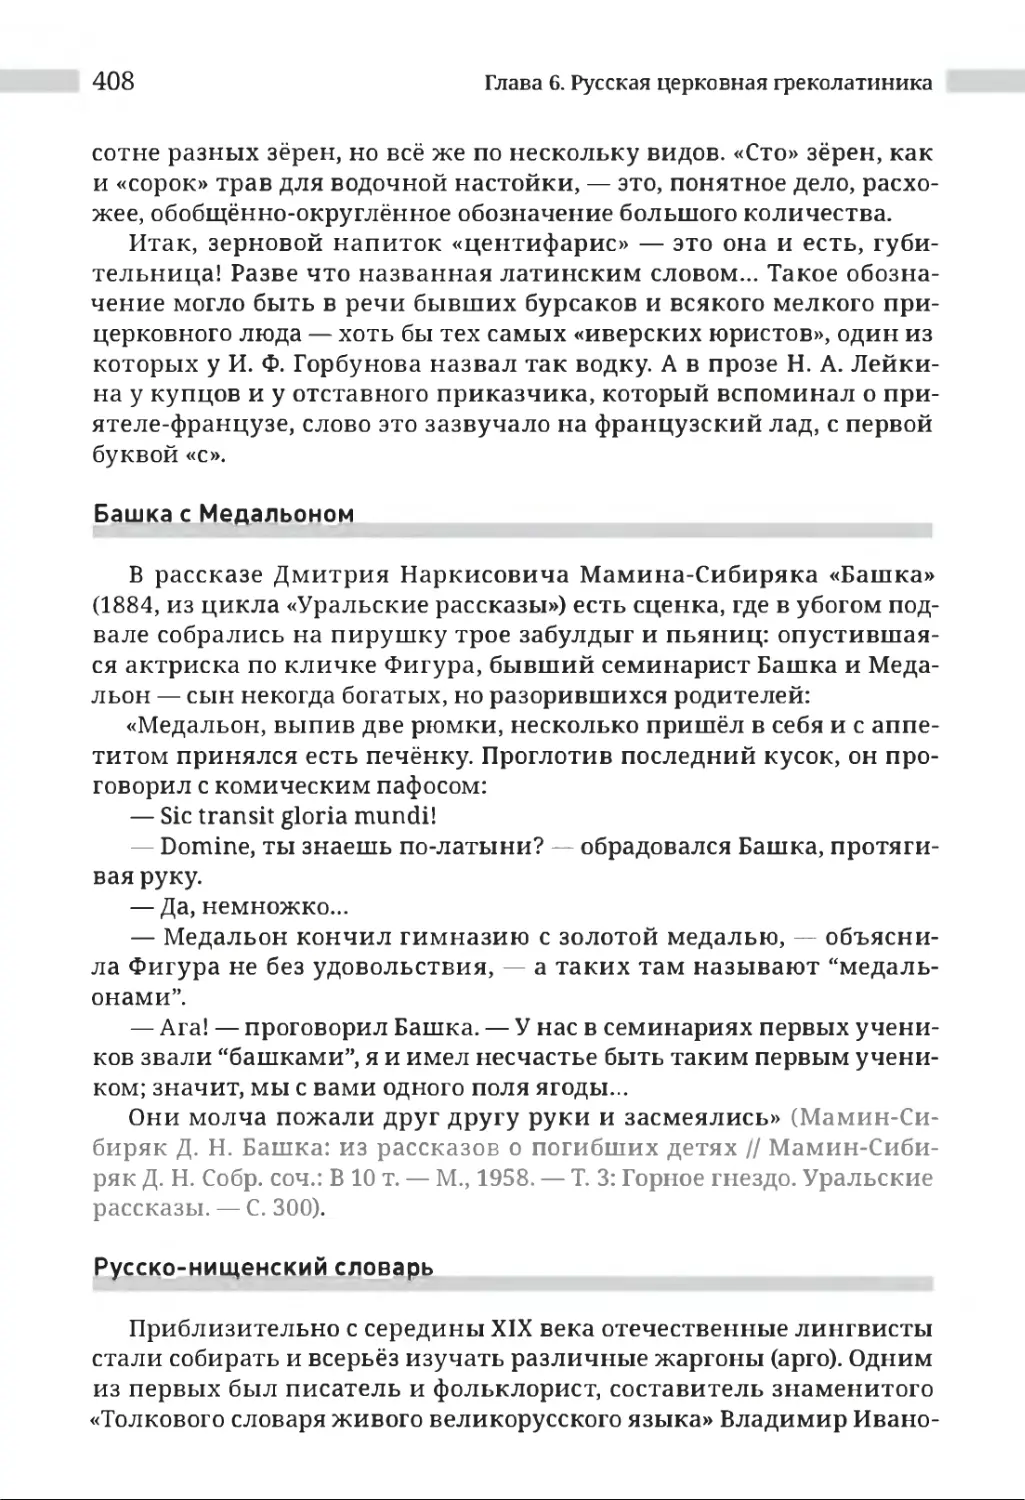 Башка с Медальоном
Русско-нищенский словарь